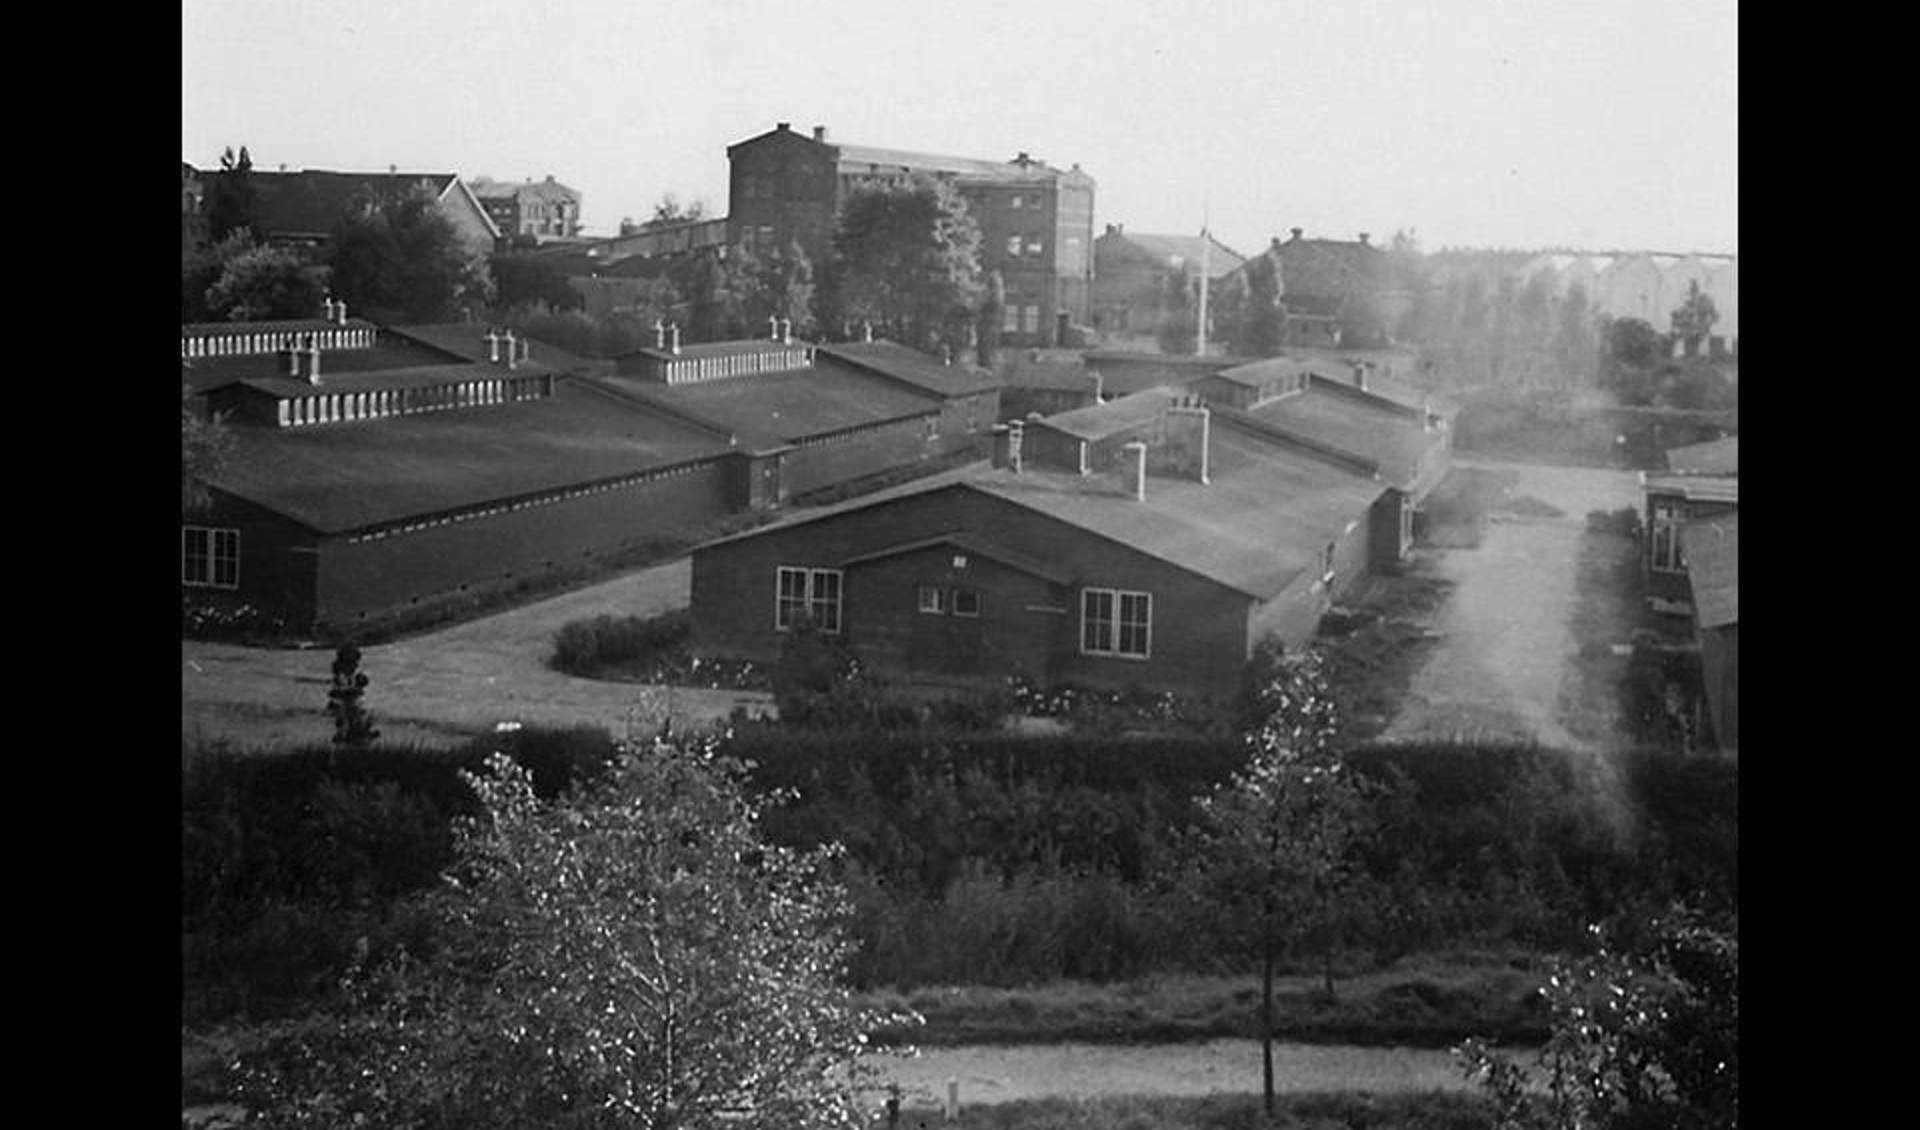 Het barakkenkamp gezien vanaf de Singel, kort voor de afbraak in 1961. Op de achtergrond de fabrieken van Van Houten.